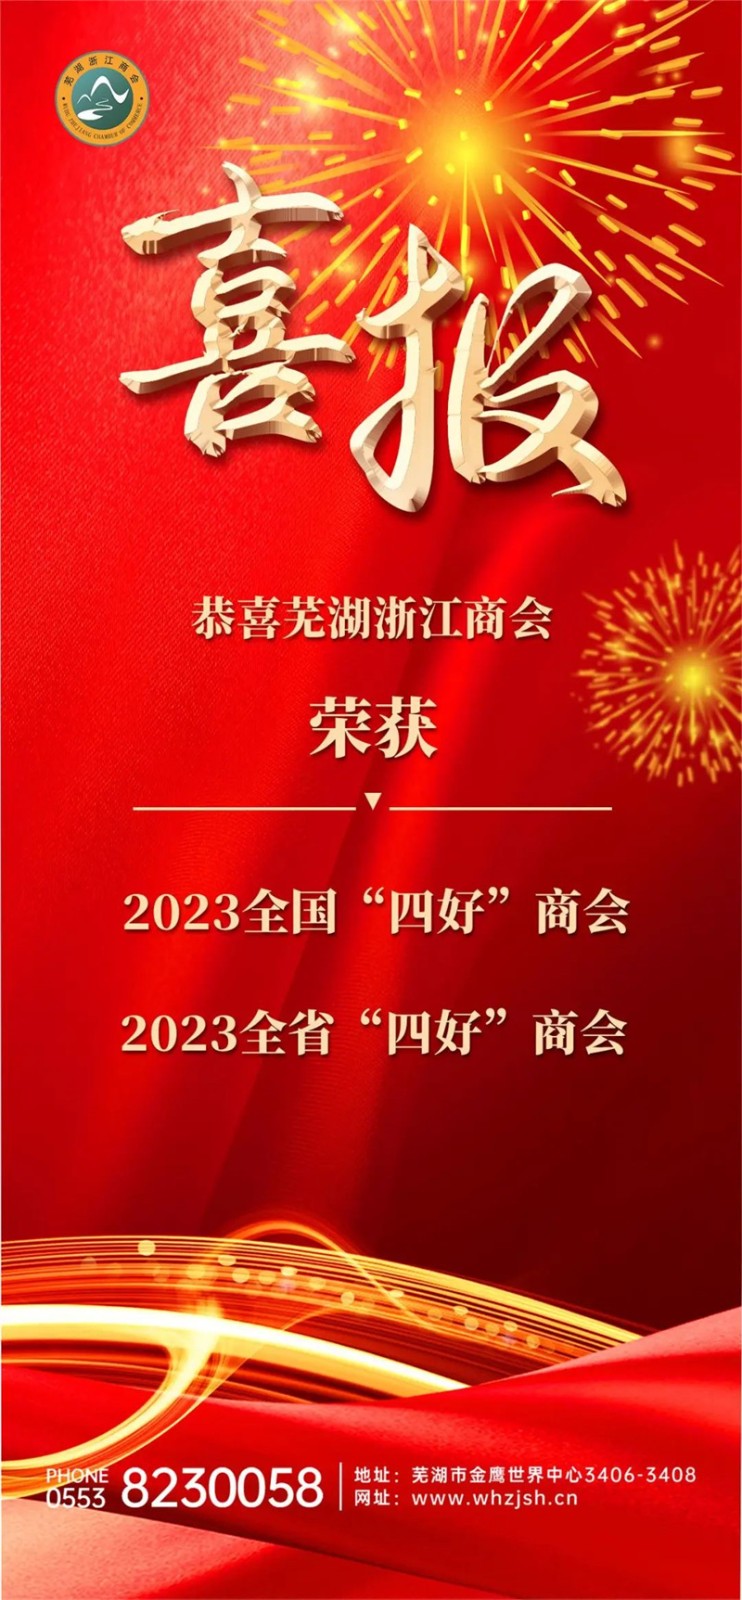 再获佳誉丨芜湖浙江商会被认定为2023全国“四好”商会、全省“四好”商会